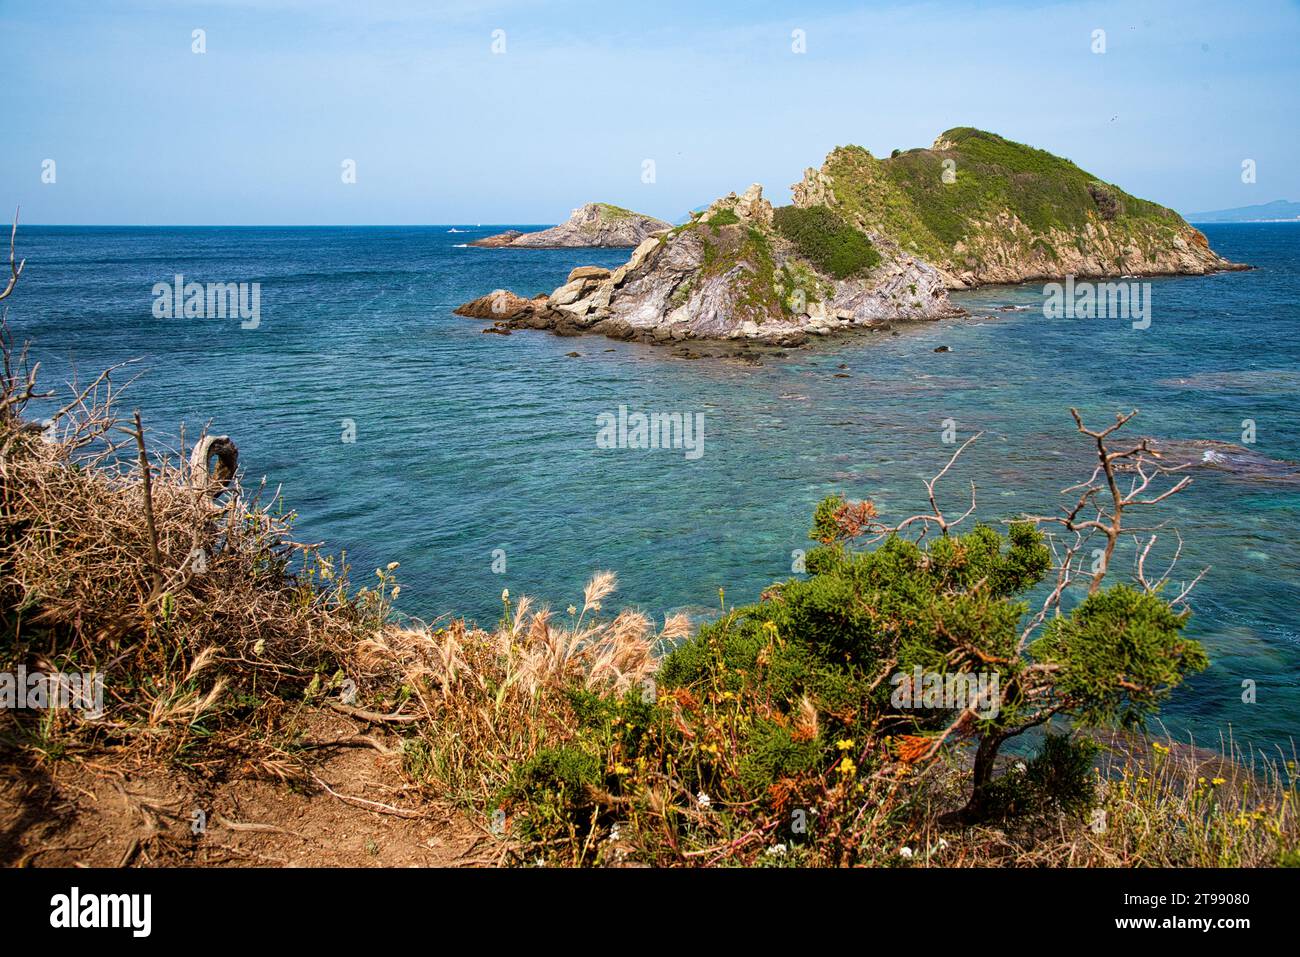 le bord de mer dans la partie ouest de la presquile de Giens appartenant au parc national de port-cros avec ses criques ses ilots ses plages sa nature Stock Photo